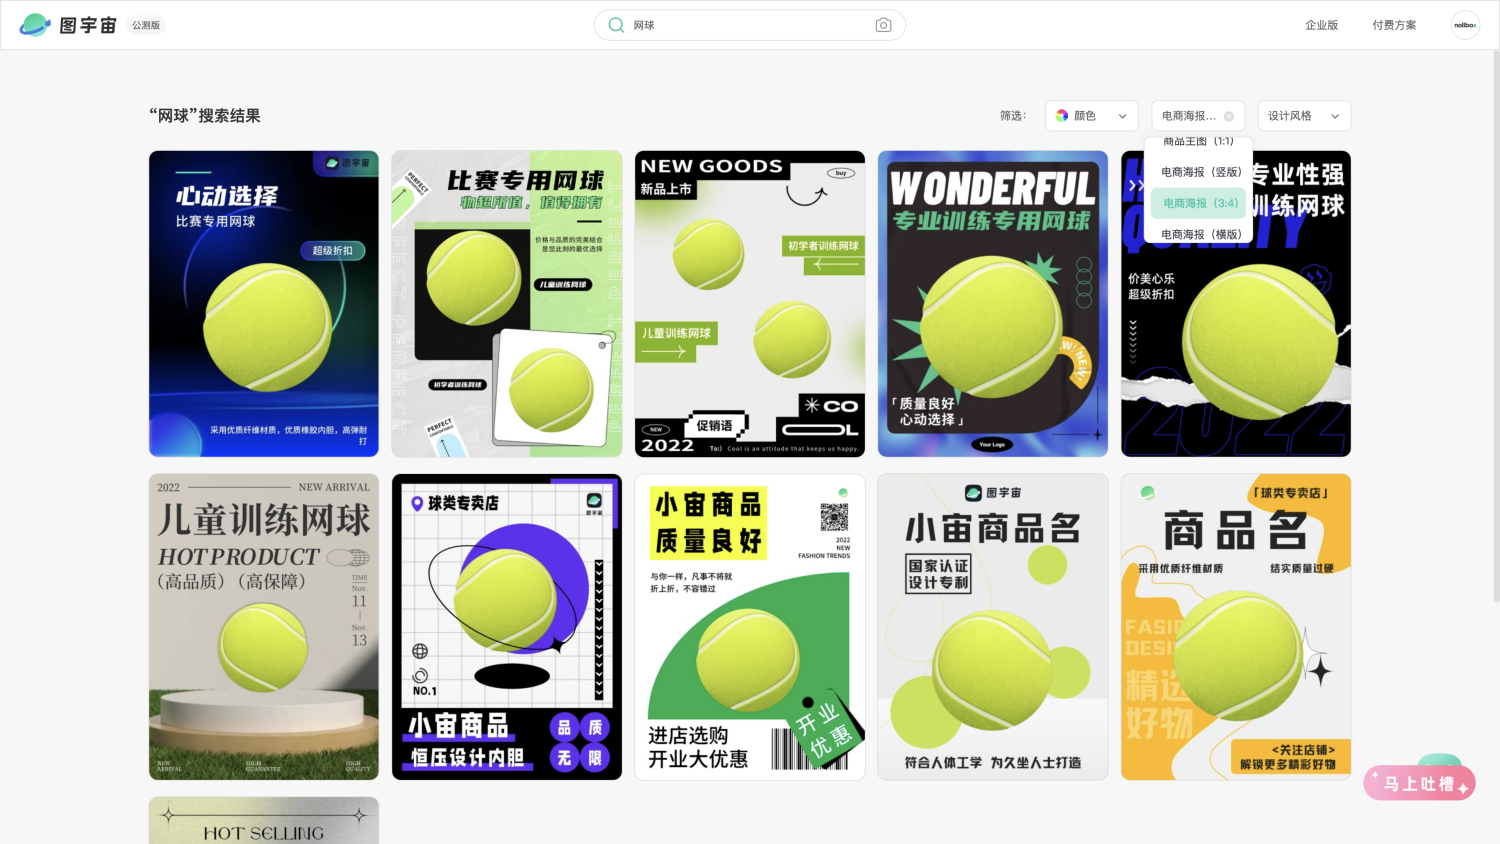 图宇宙-「网球」电商海报（3:4）模板中心结果展示